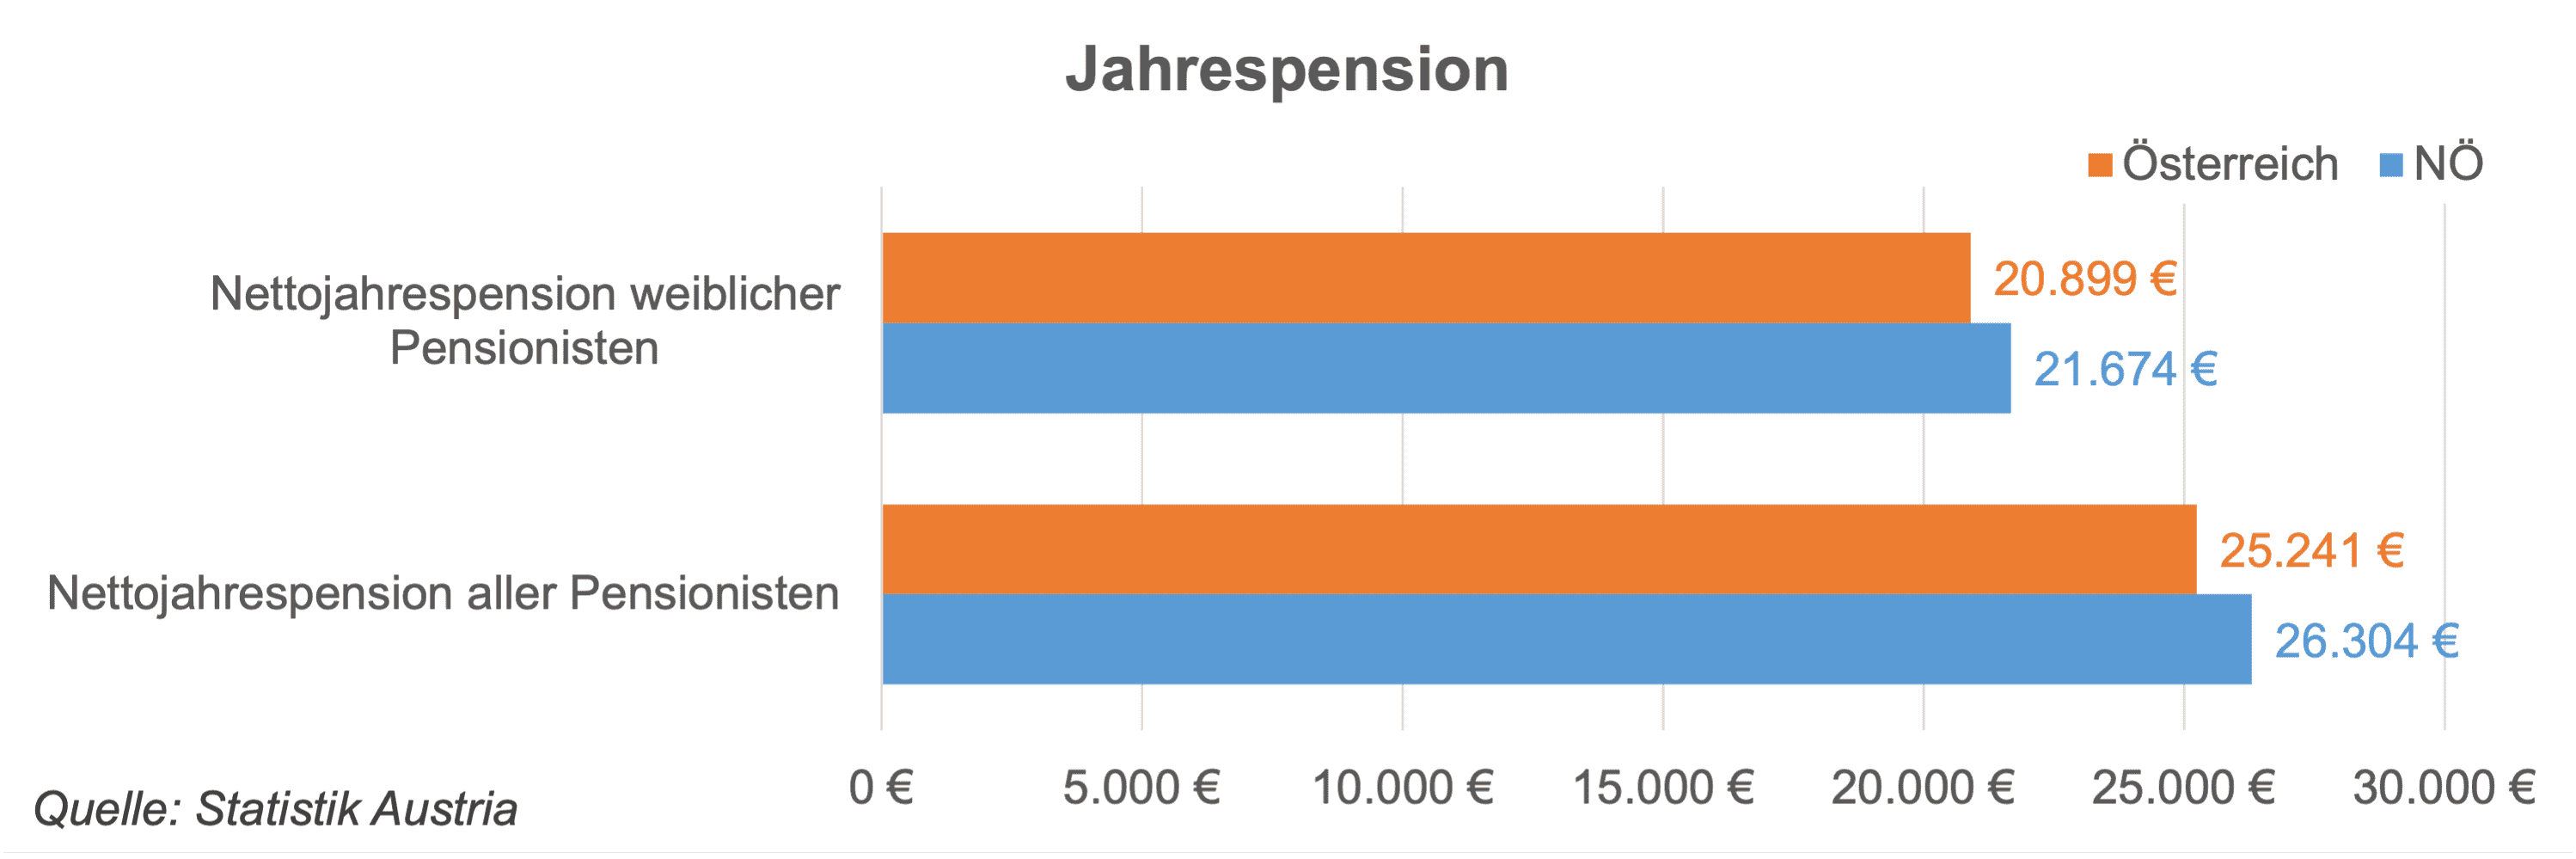 Es gibt ca. 5% mehr Pensionistinnen in NÖ. Die Nettojahrespension der Pensionistinnen liegt in NÖ um etwa 18 niedriger als im Durchschnitt.